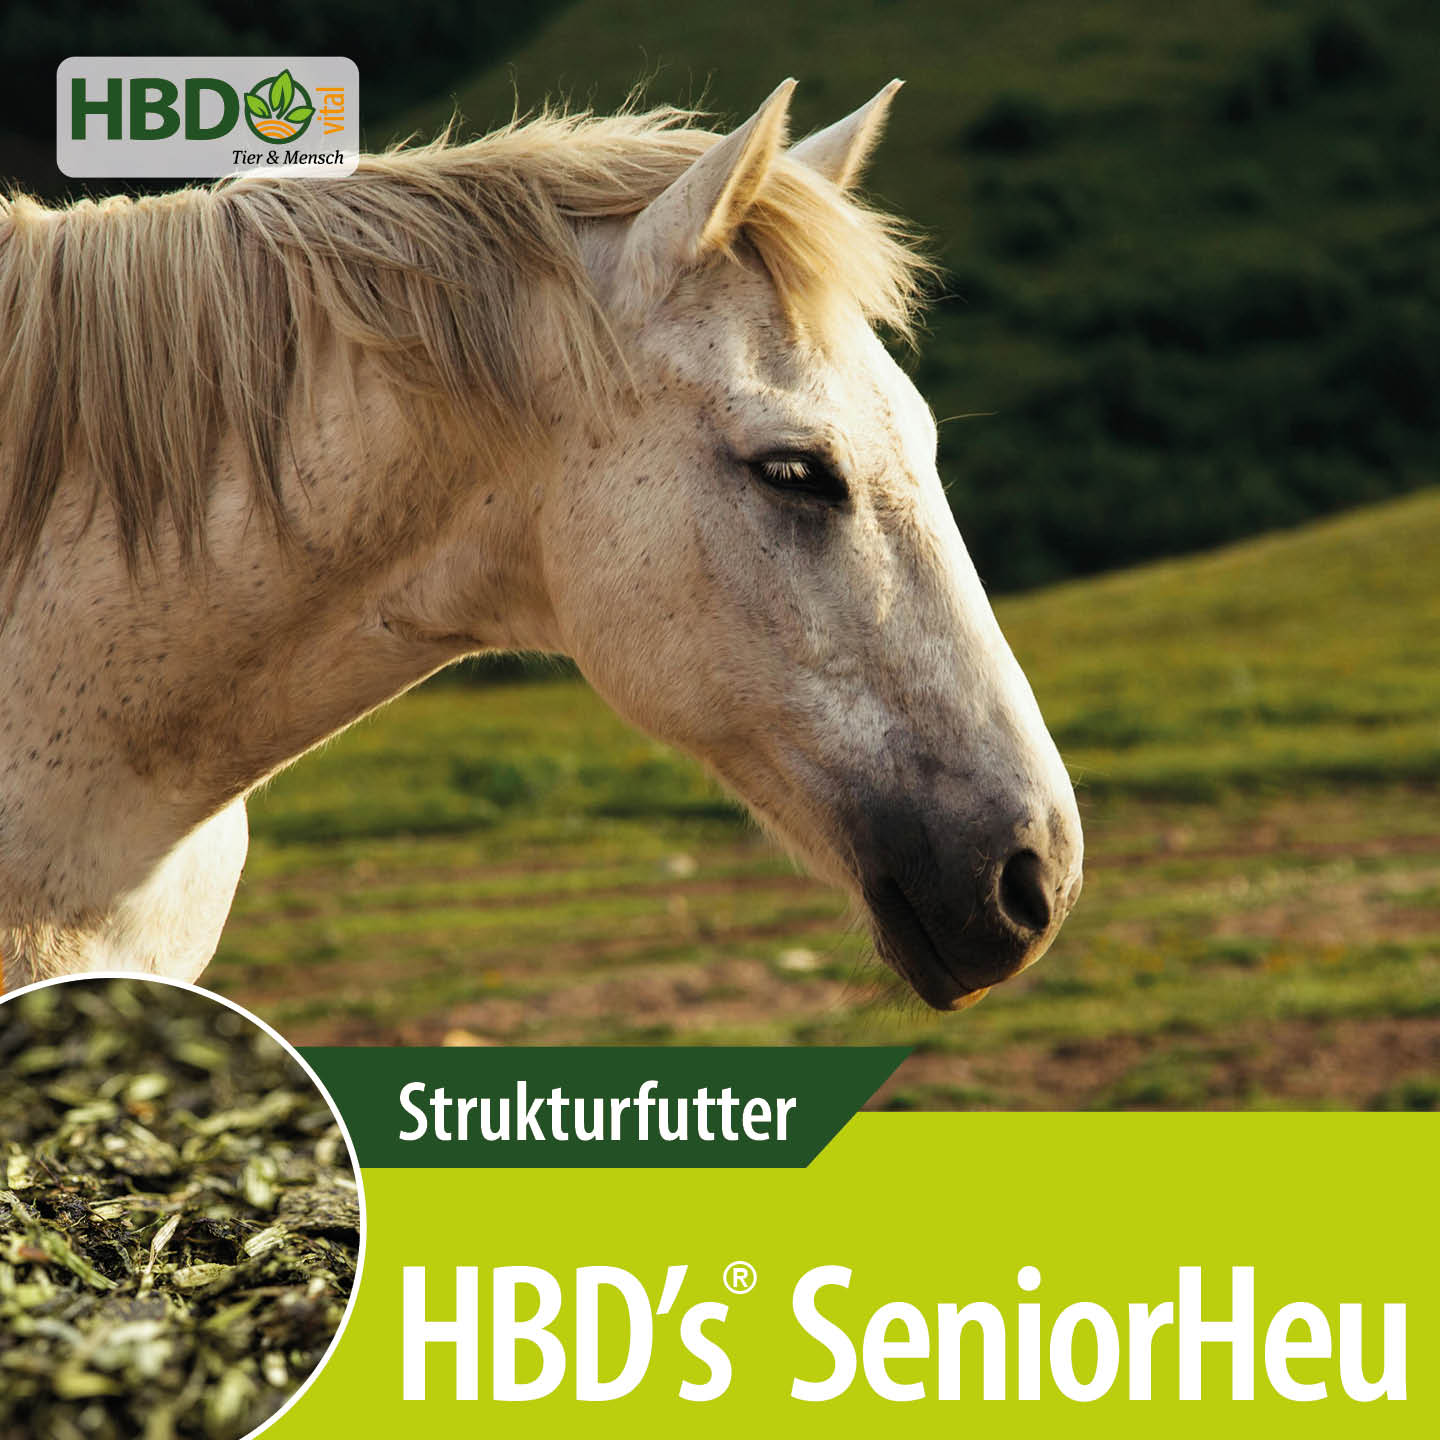 Shopbild für HBD’s SeniorHeu - Das Bild zeigt den Produktnamen sowie den Hinweis, dass es sich um ein Strukturfutter handelt. Ein weißes älteres Pferd ist zu sehen